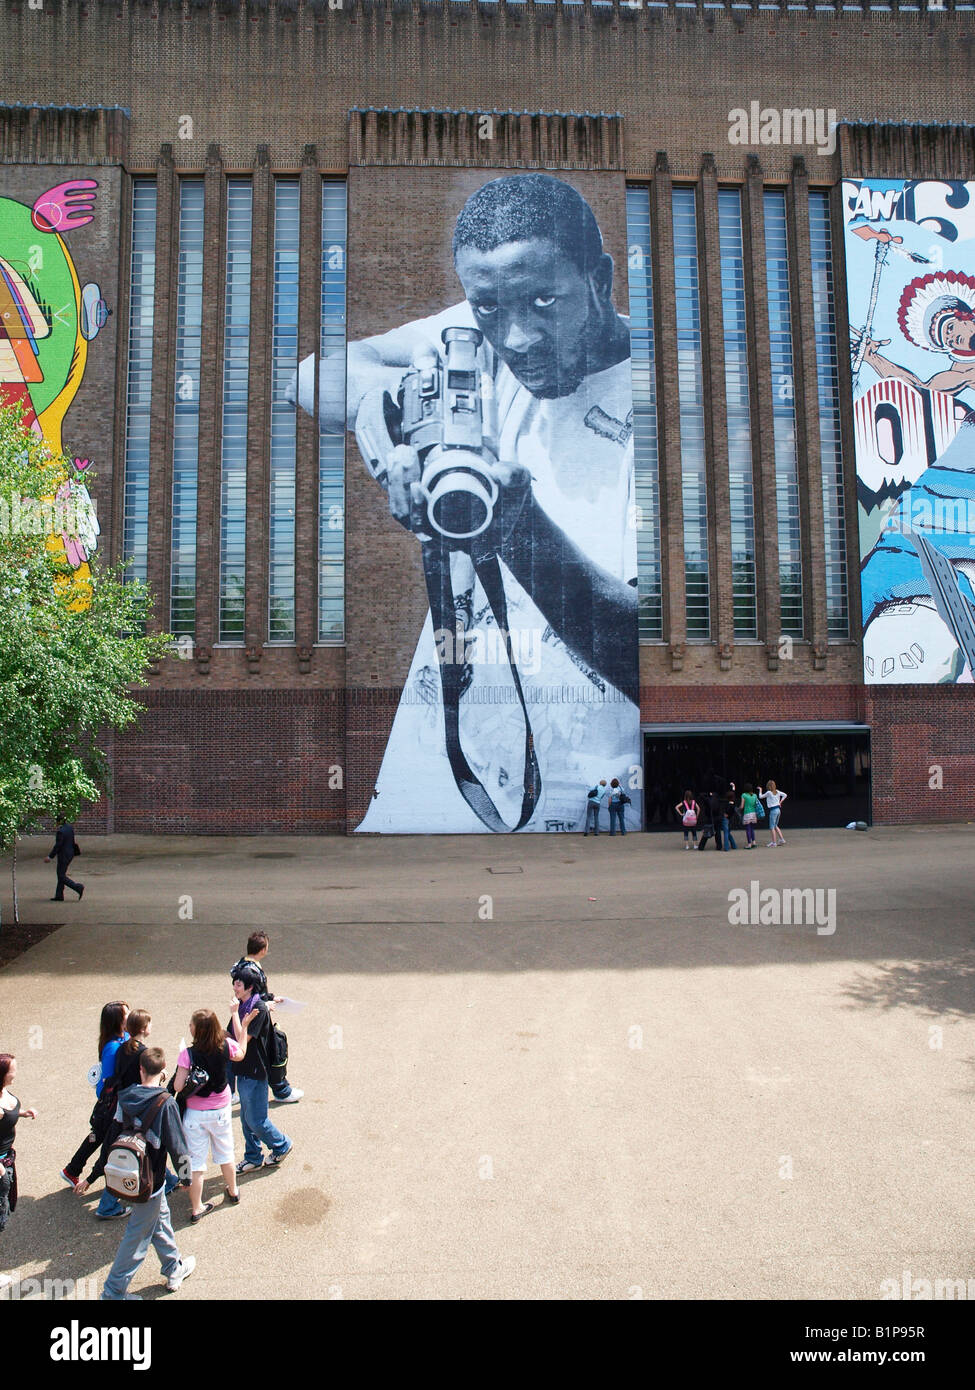 Imagen de arte de la calle por el artista parisino JR en la Tate Modern de Londres Foto de stock